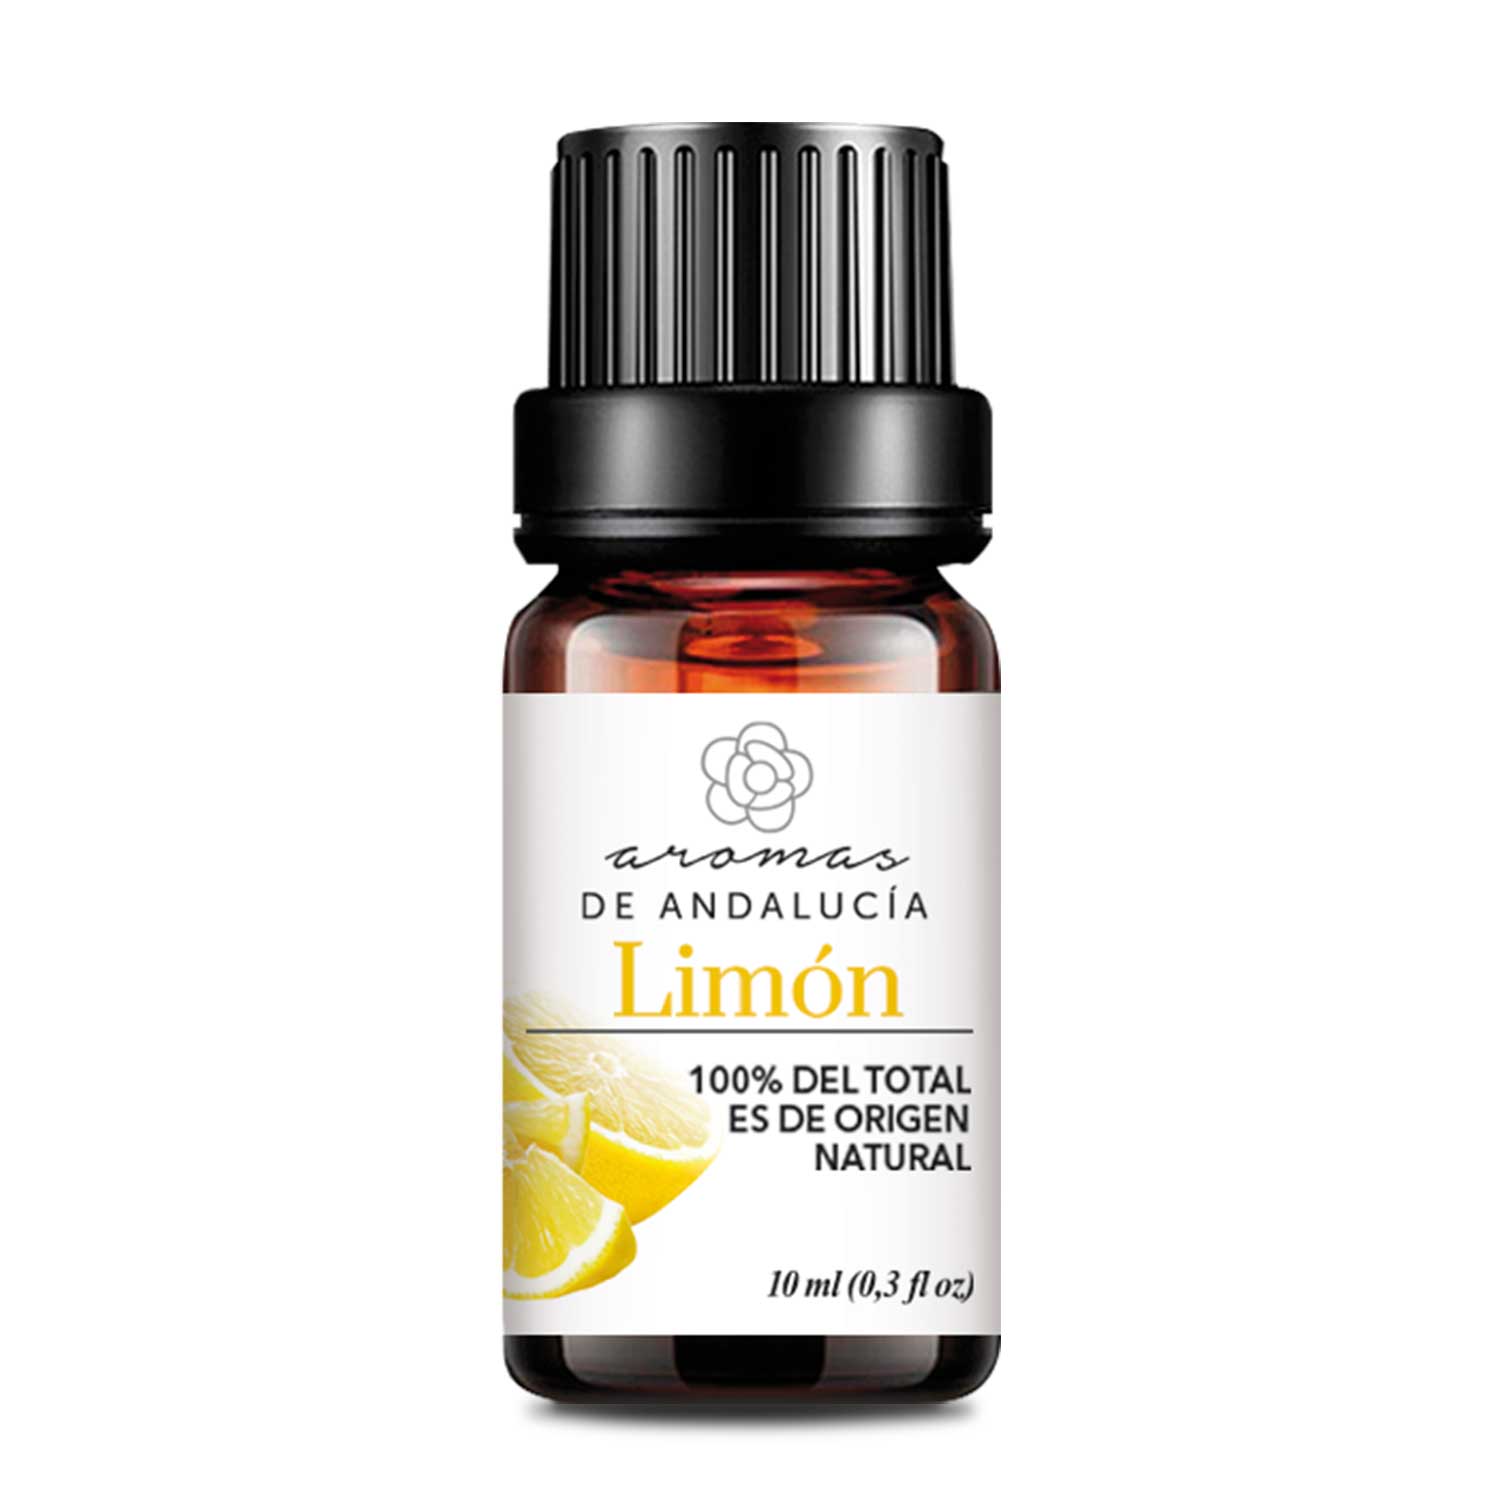 aceites esenciales para el hogar - limón
